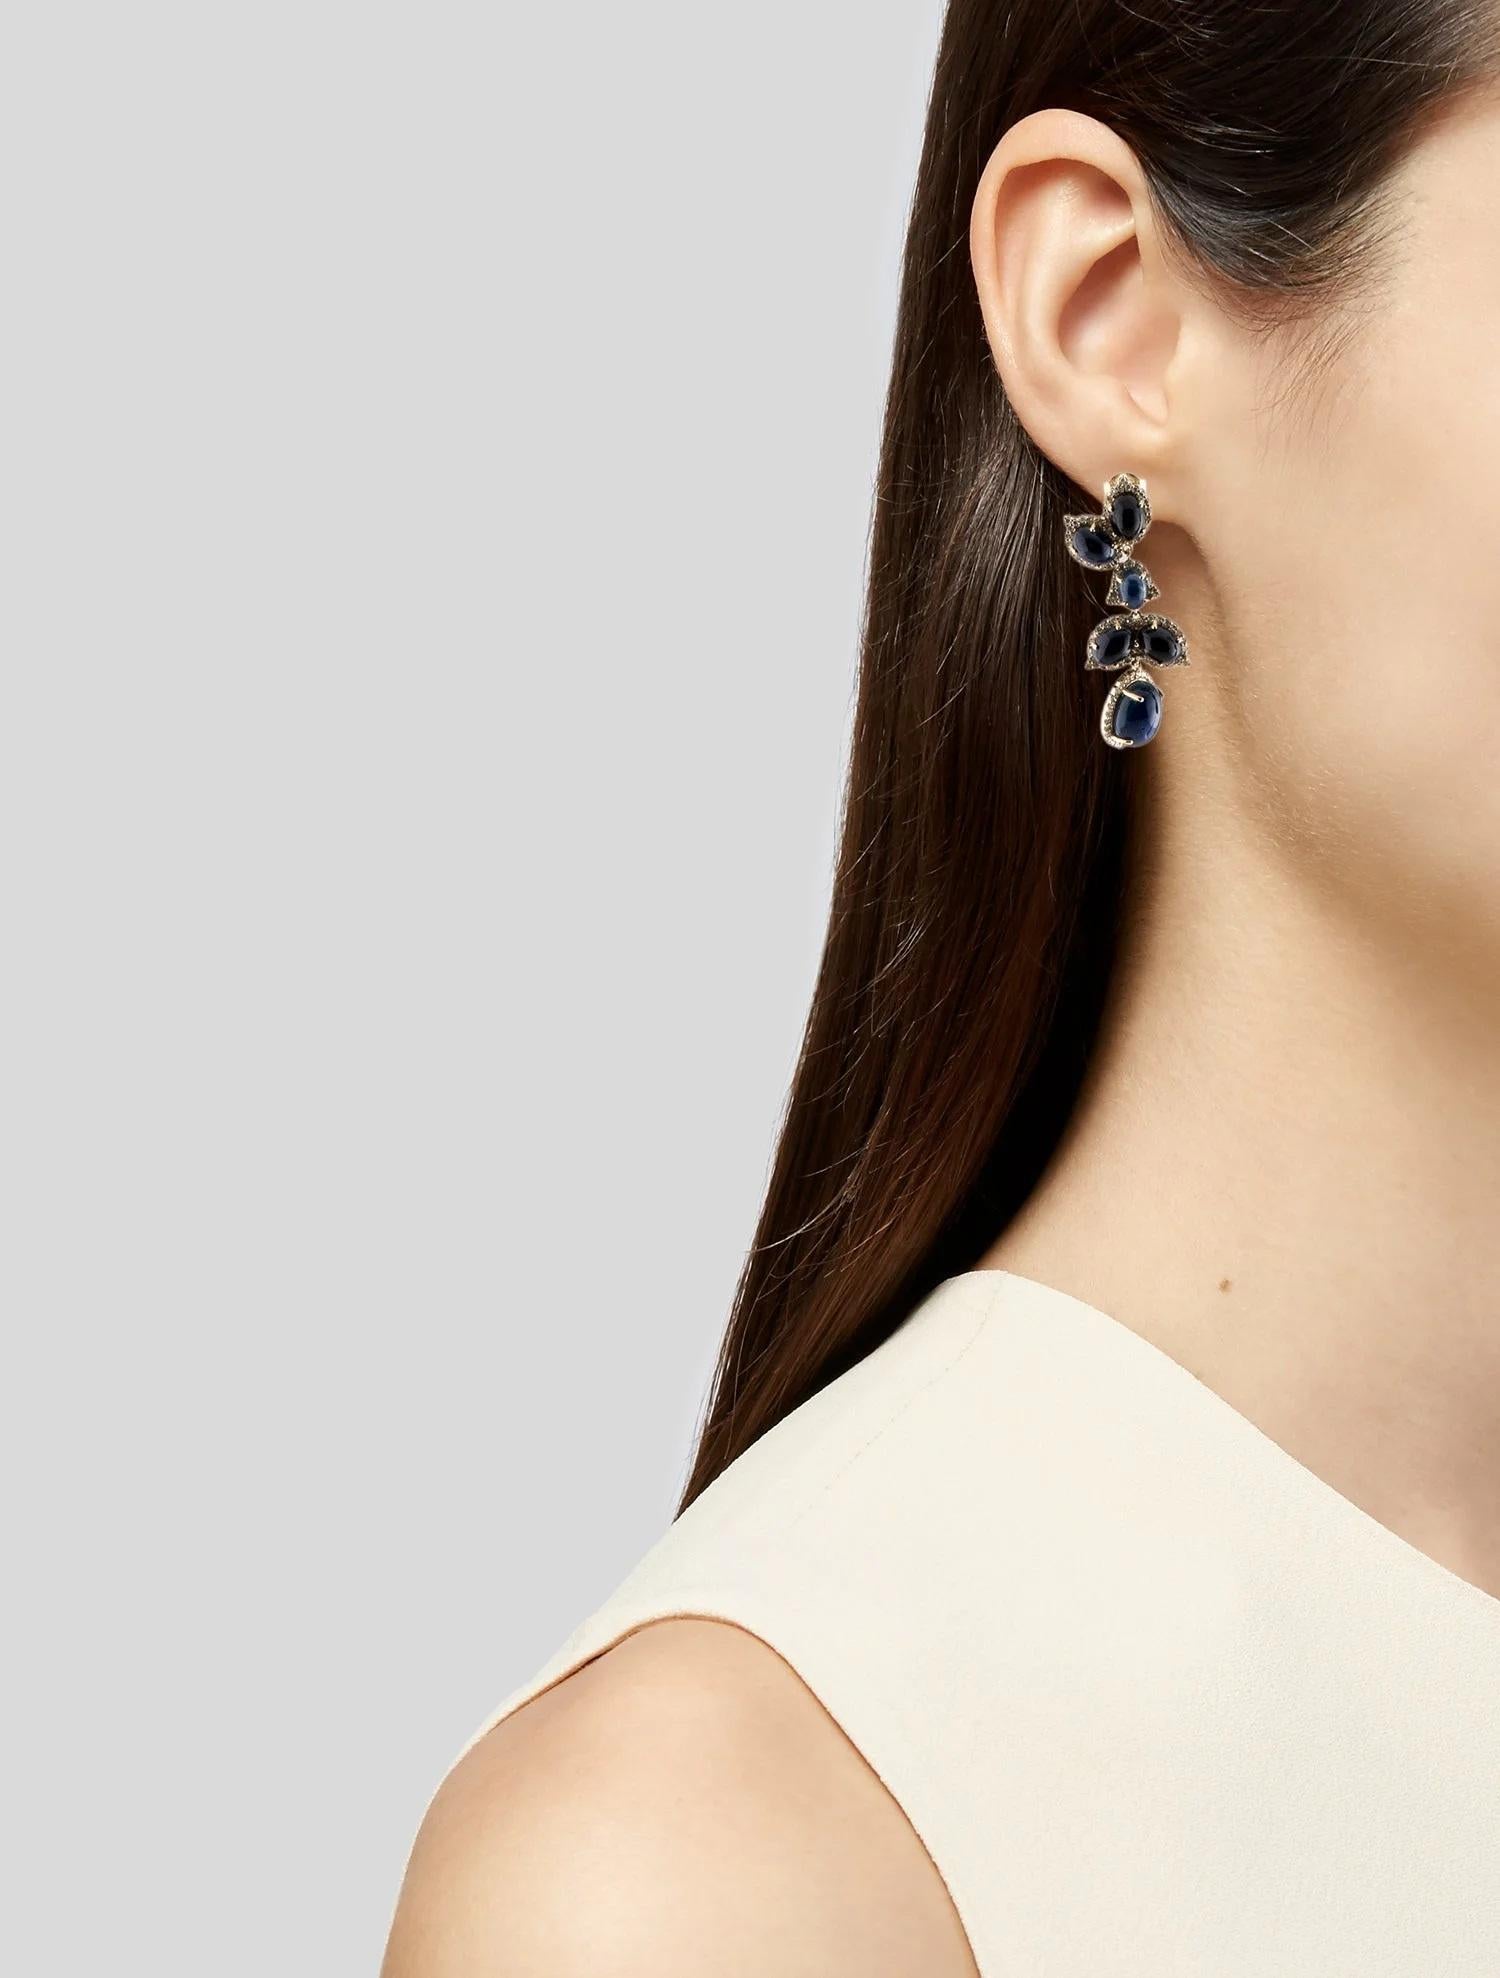 Werten Sie Ihre Schmucksammlung mit diesen atemberaubenden 14K Sapphire & Diamond Drop Earrings auf. Diese aus luxuriösem Gelbgold gefertigten Ohrringe mit ovalen Saphir-Cabochons von 1,48 Karat strahlen zeitlose Eleganz aus. Diese Ohrringe sind mit